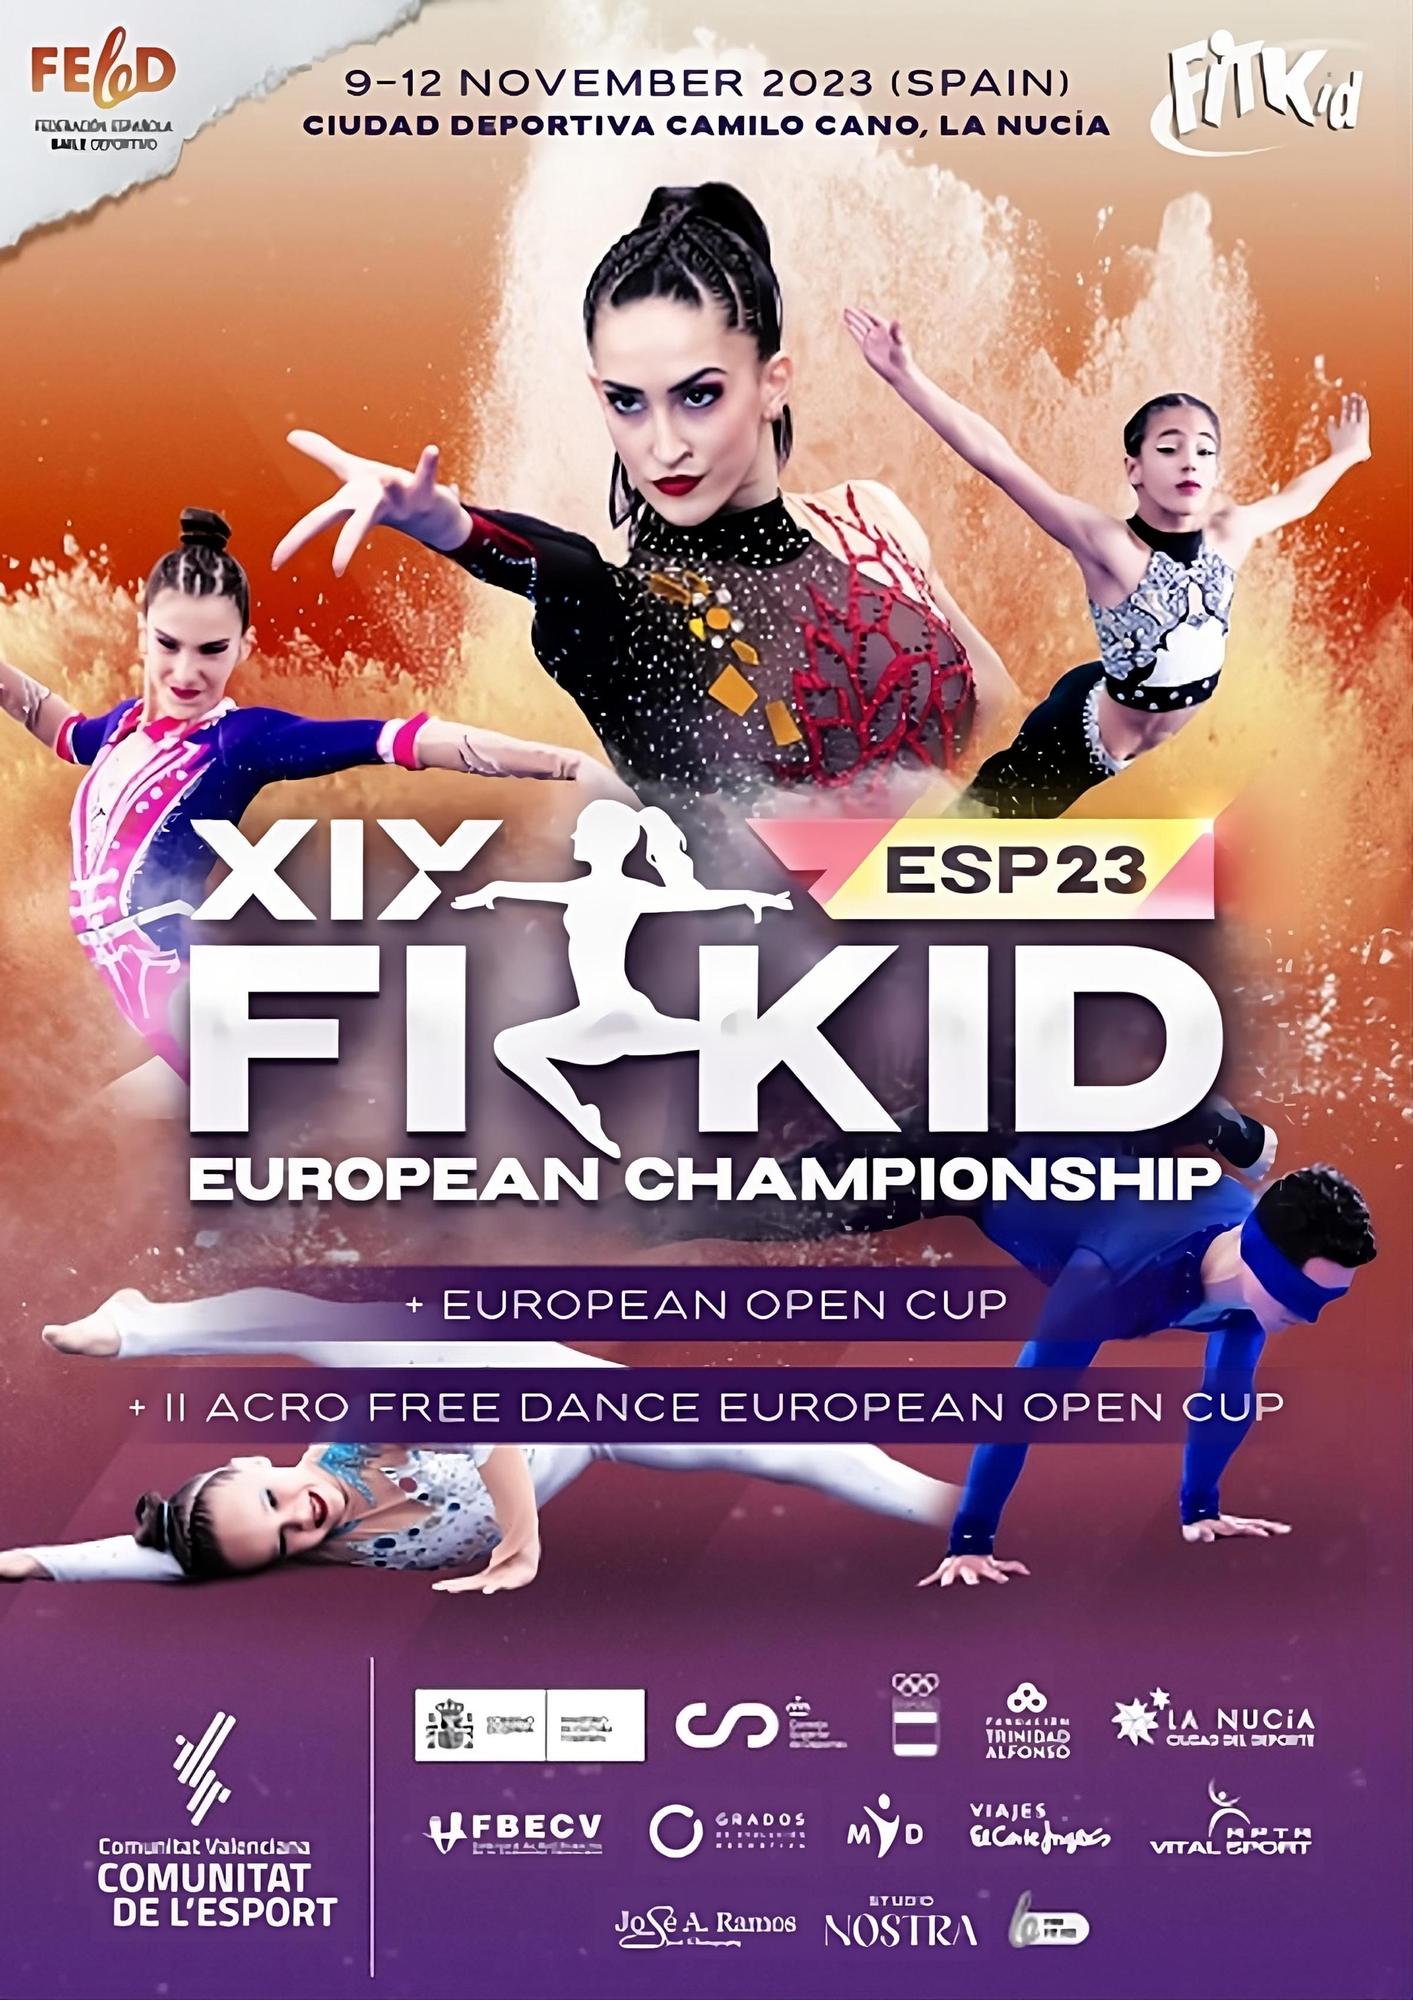 Una setabense en el campeonato de Europa de Fitkid